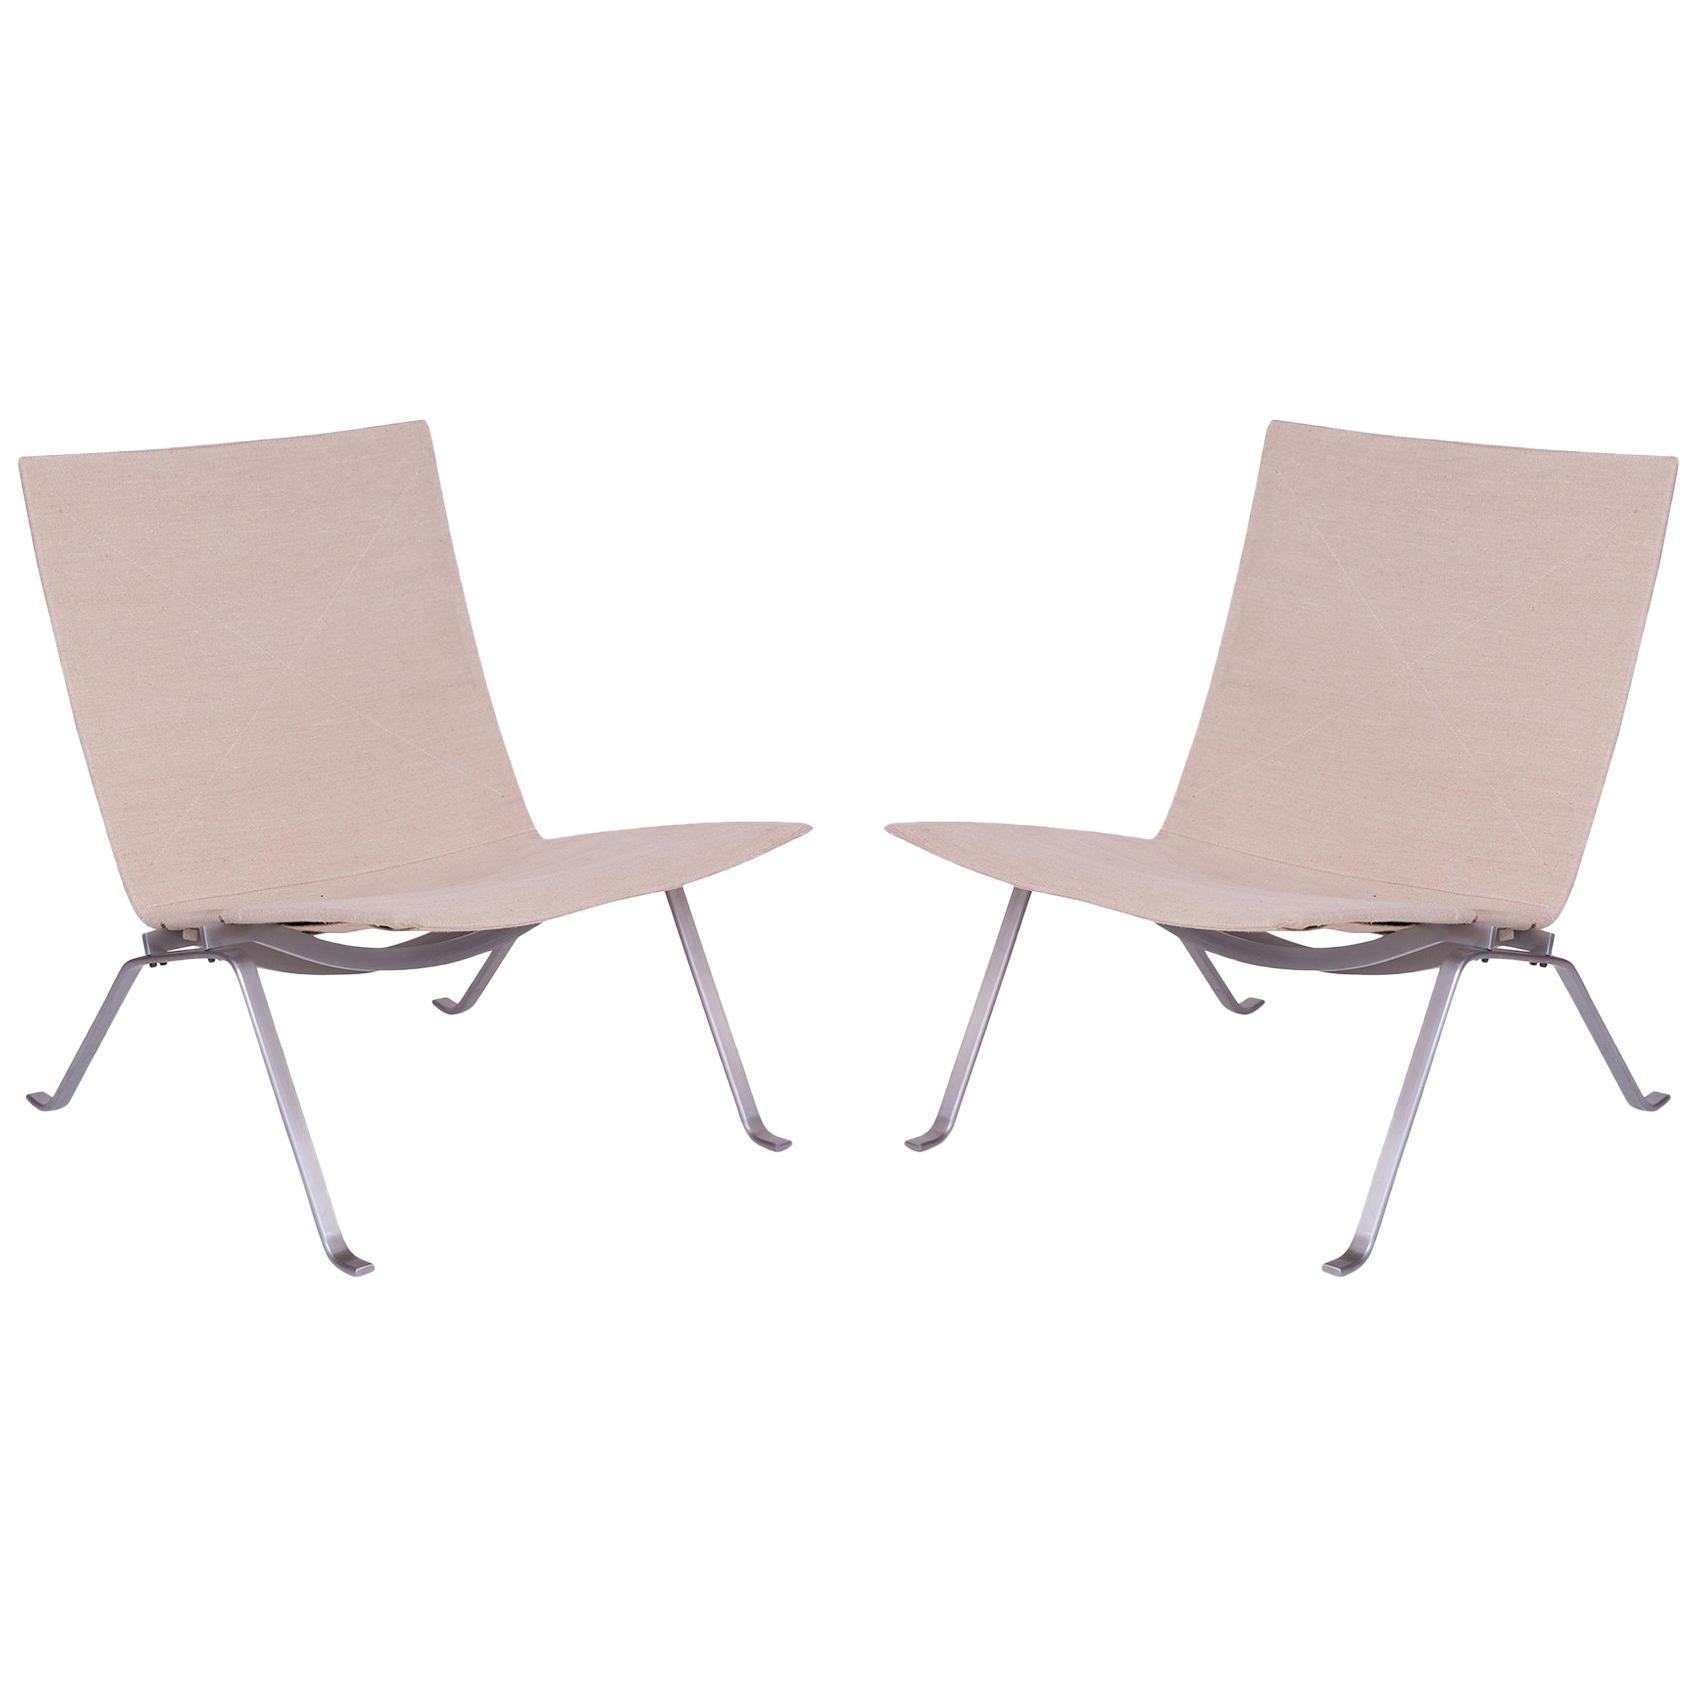 Poul Kjaerholm PK-22 Lounge Chairs